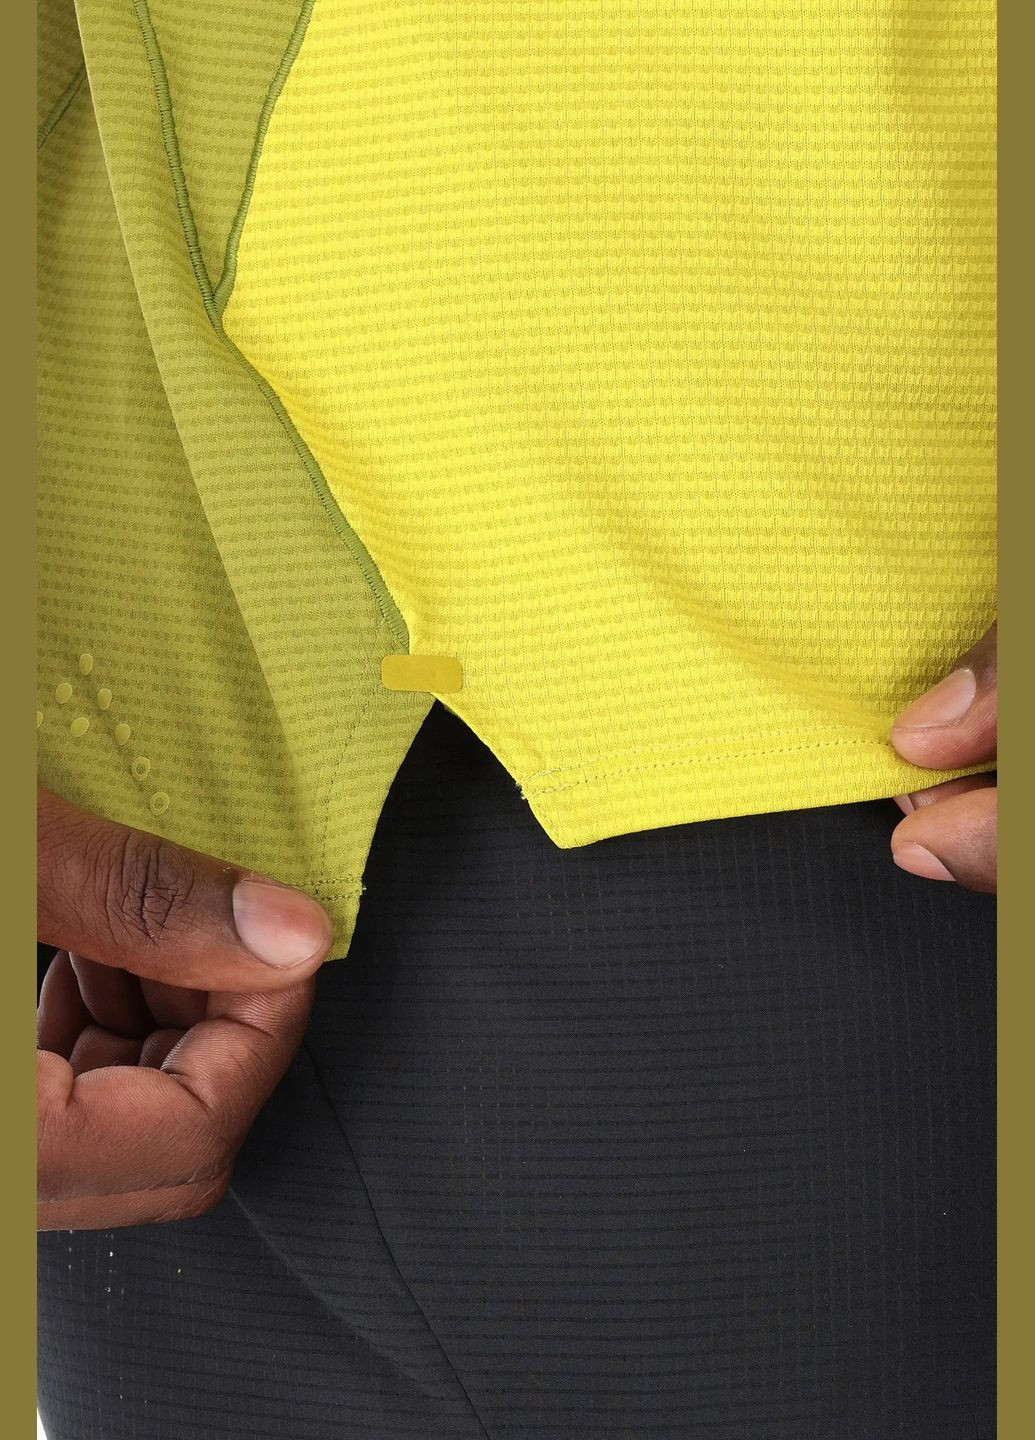 Комбинированная мужская футболка sonic ultra tee зеленый-жёлтый Rab